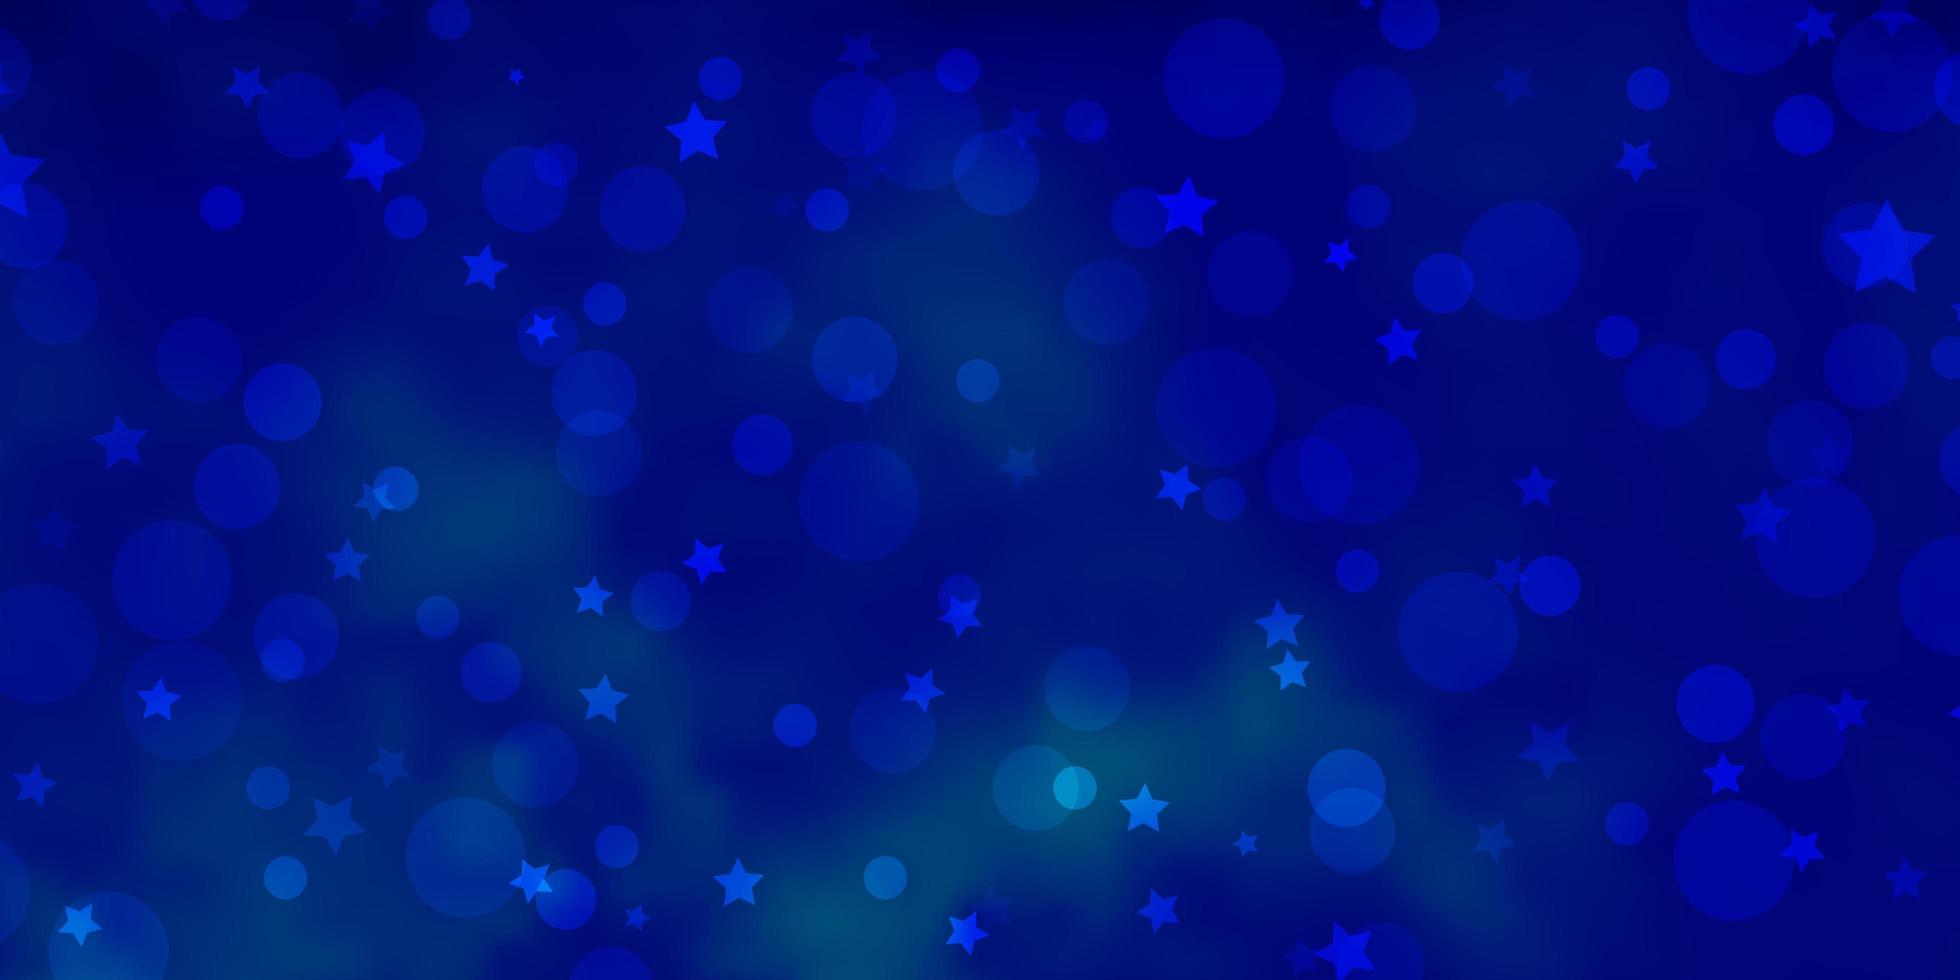 layout de vetor de luz azul com círculos, estrelas. desenho abstrato em estilo gradiente com bolhas, estrelas. modelo para cartões de visita, sites.